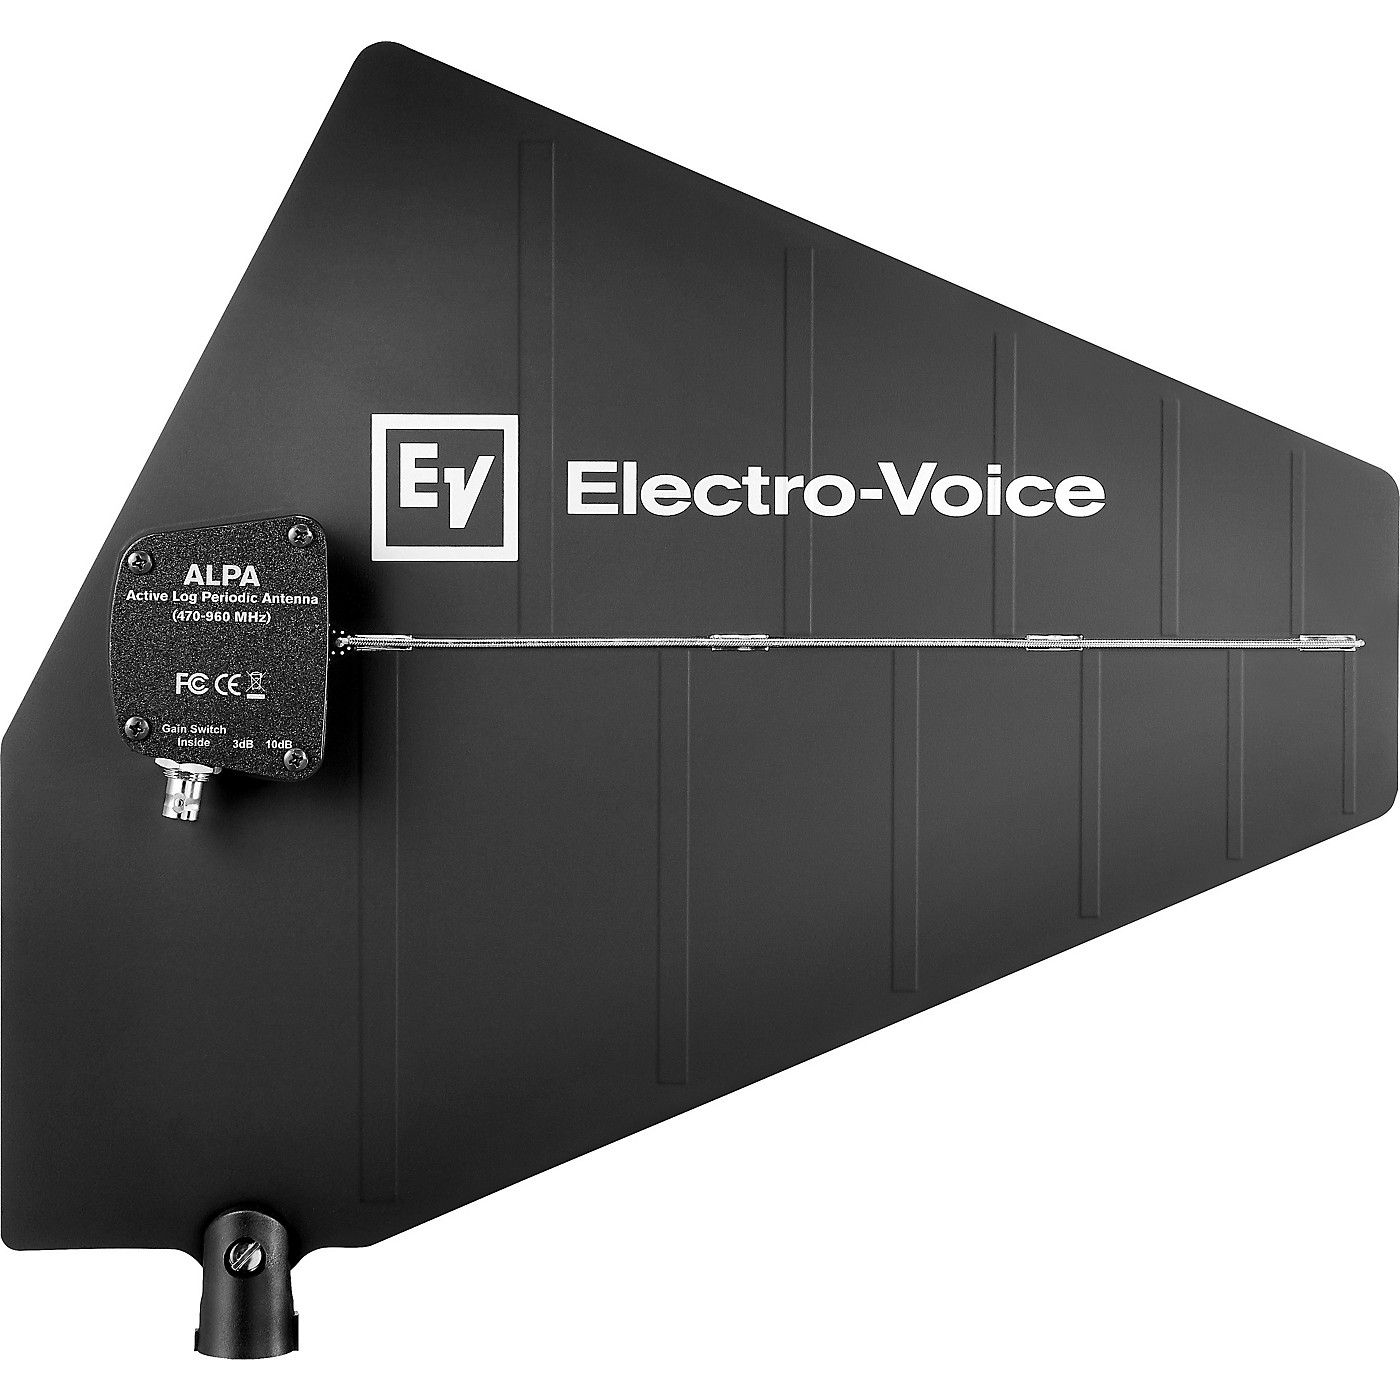 Electro-Voice Active log periodic antenna thumbnail